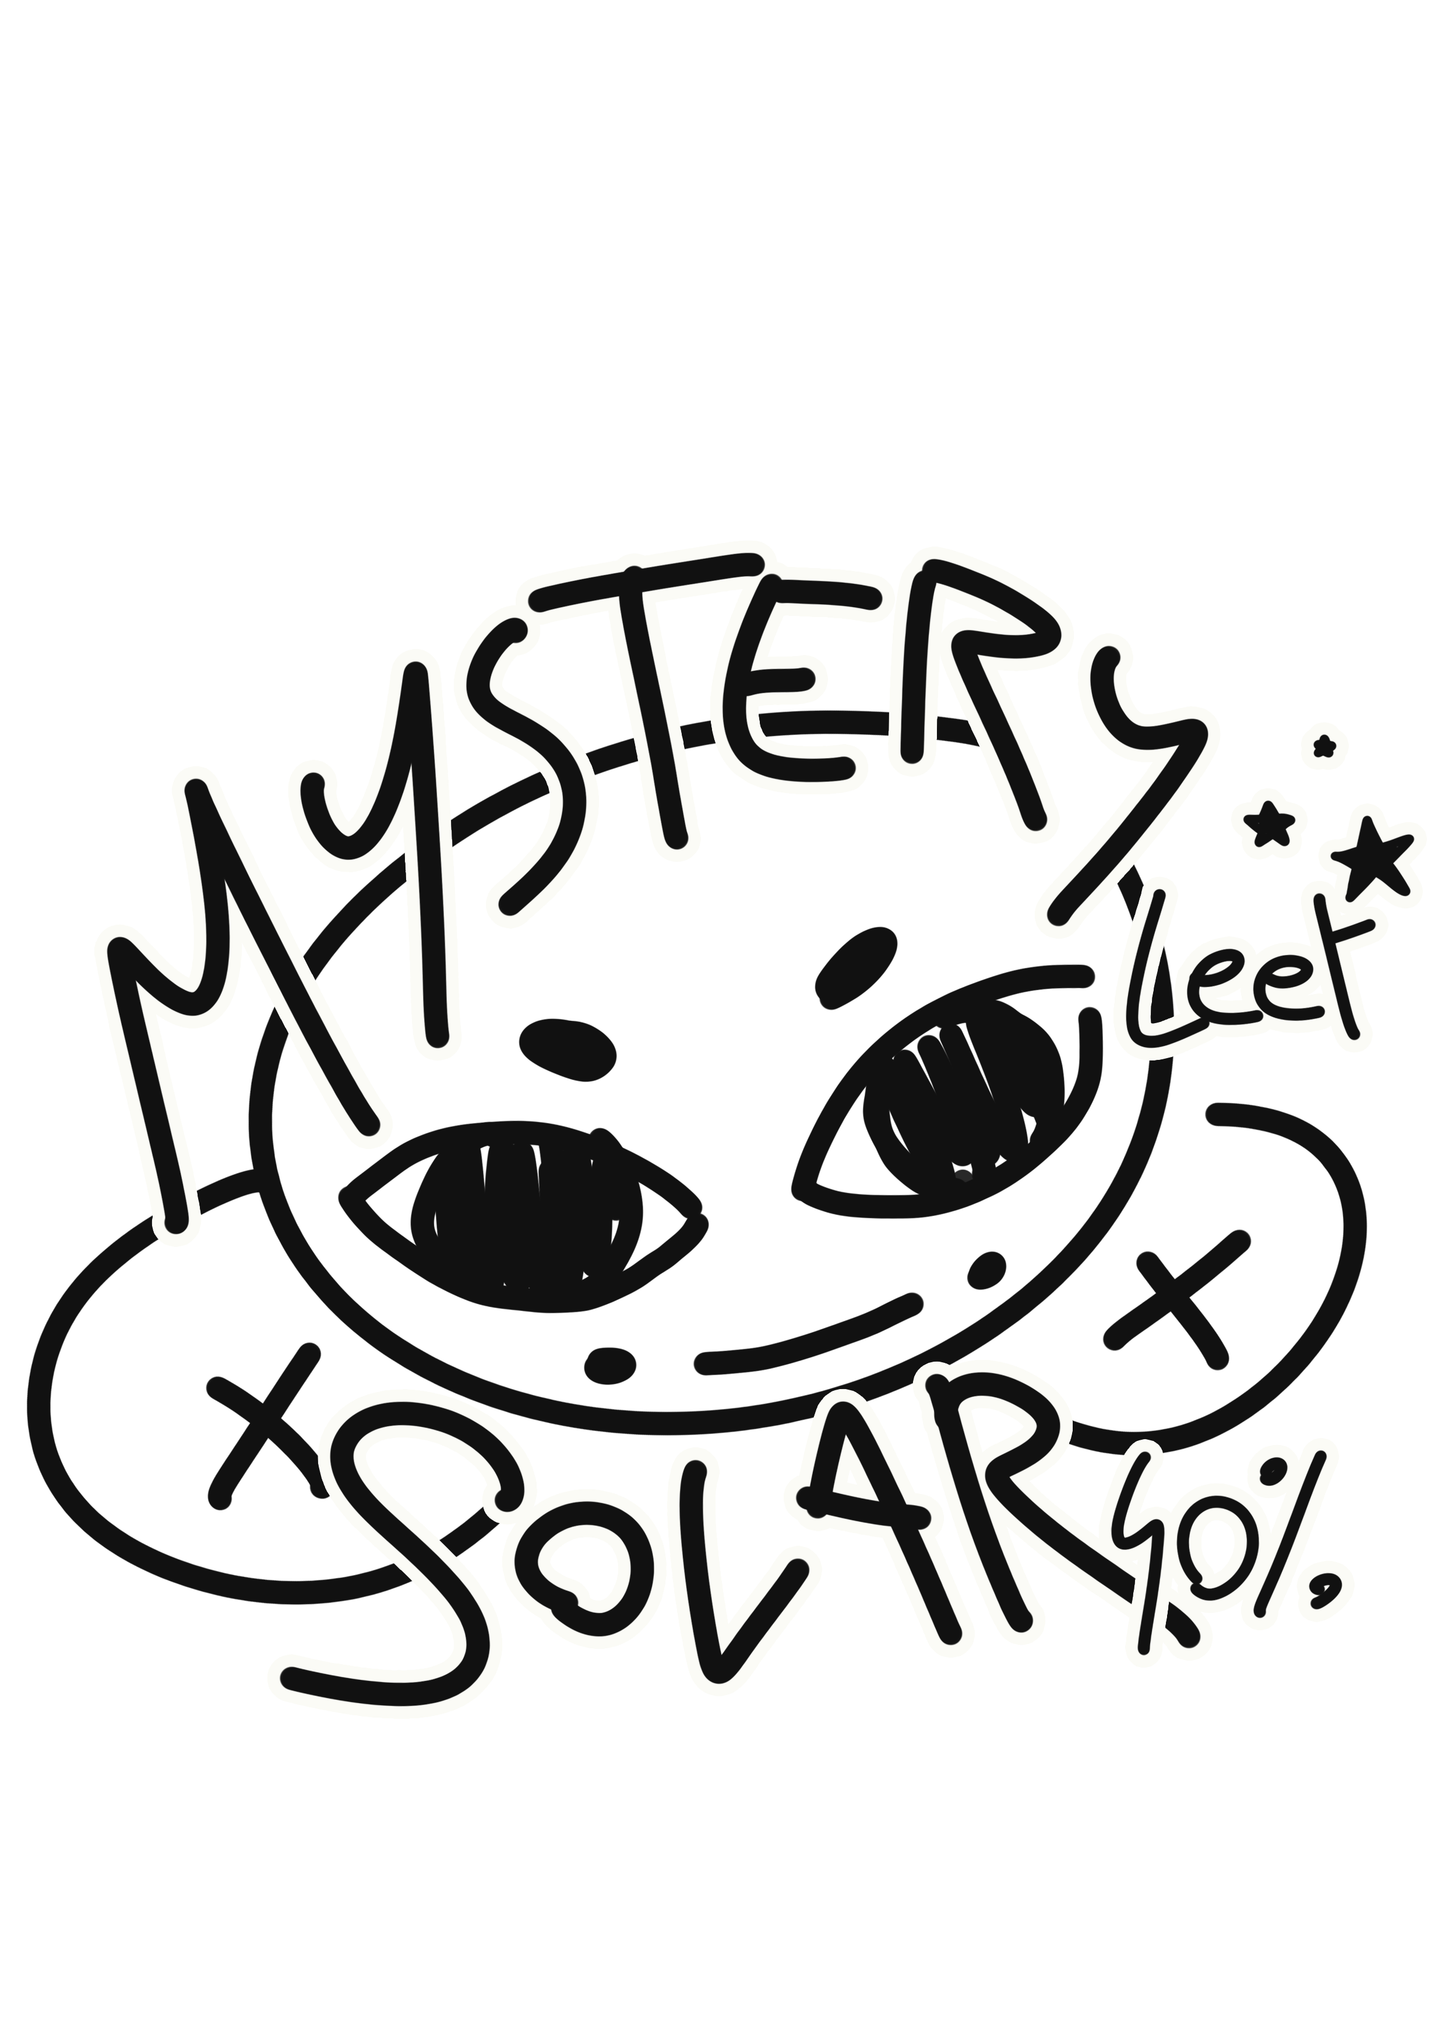 Mystery solar Leet kit